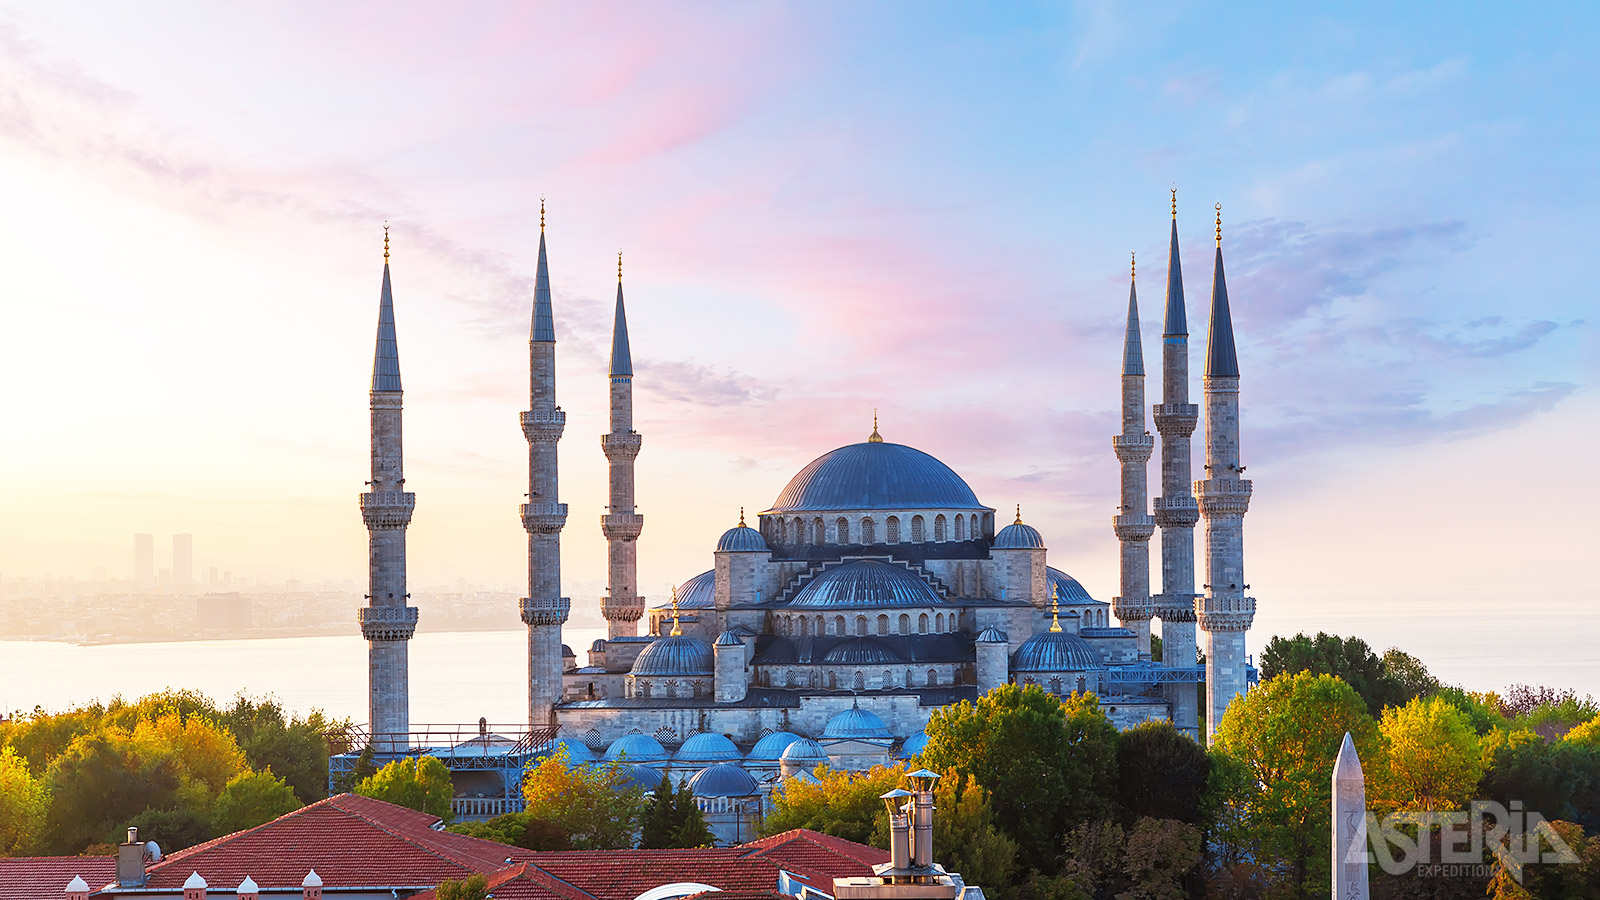 De iconische Sultan Ahmet-moskee, ook bekend als de Blauwe Moskee met zijn 6 minaretten